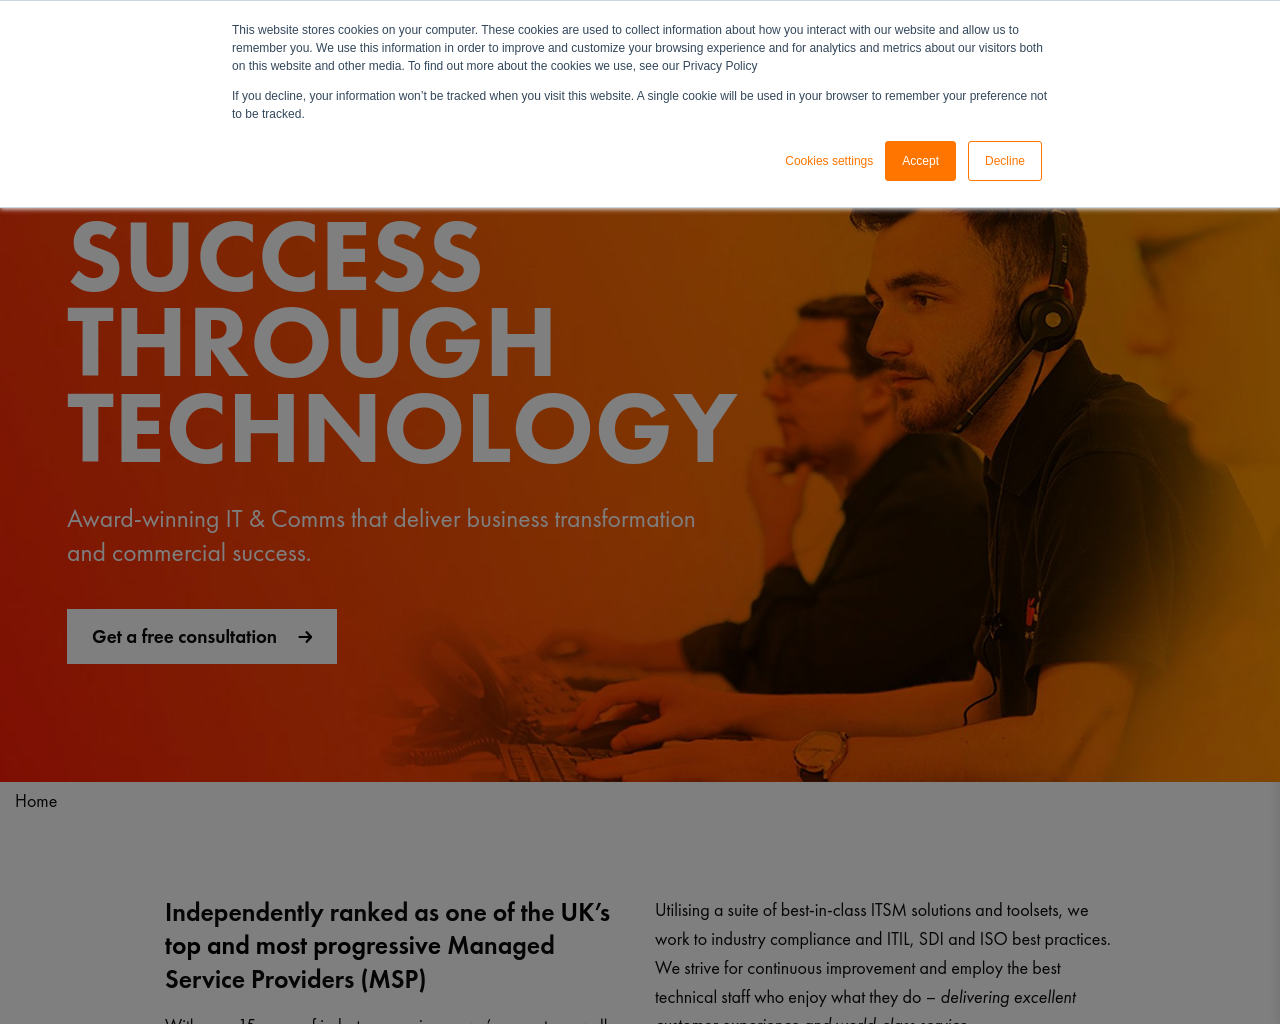 infotech.co.uk